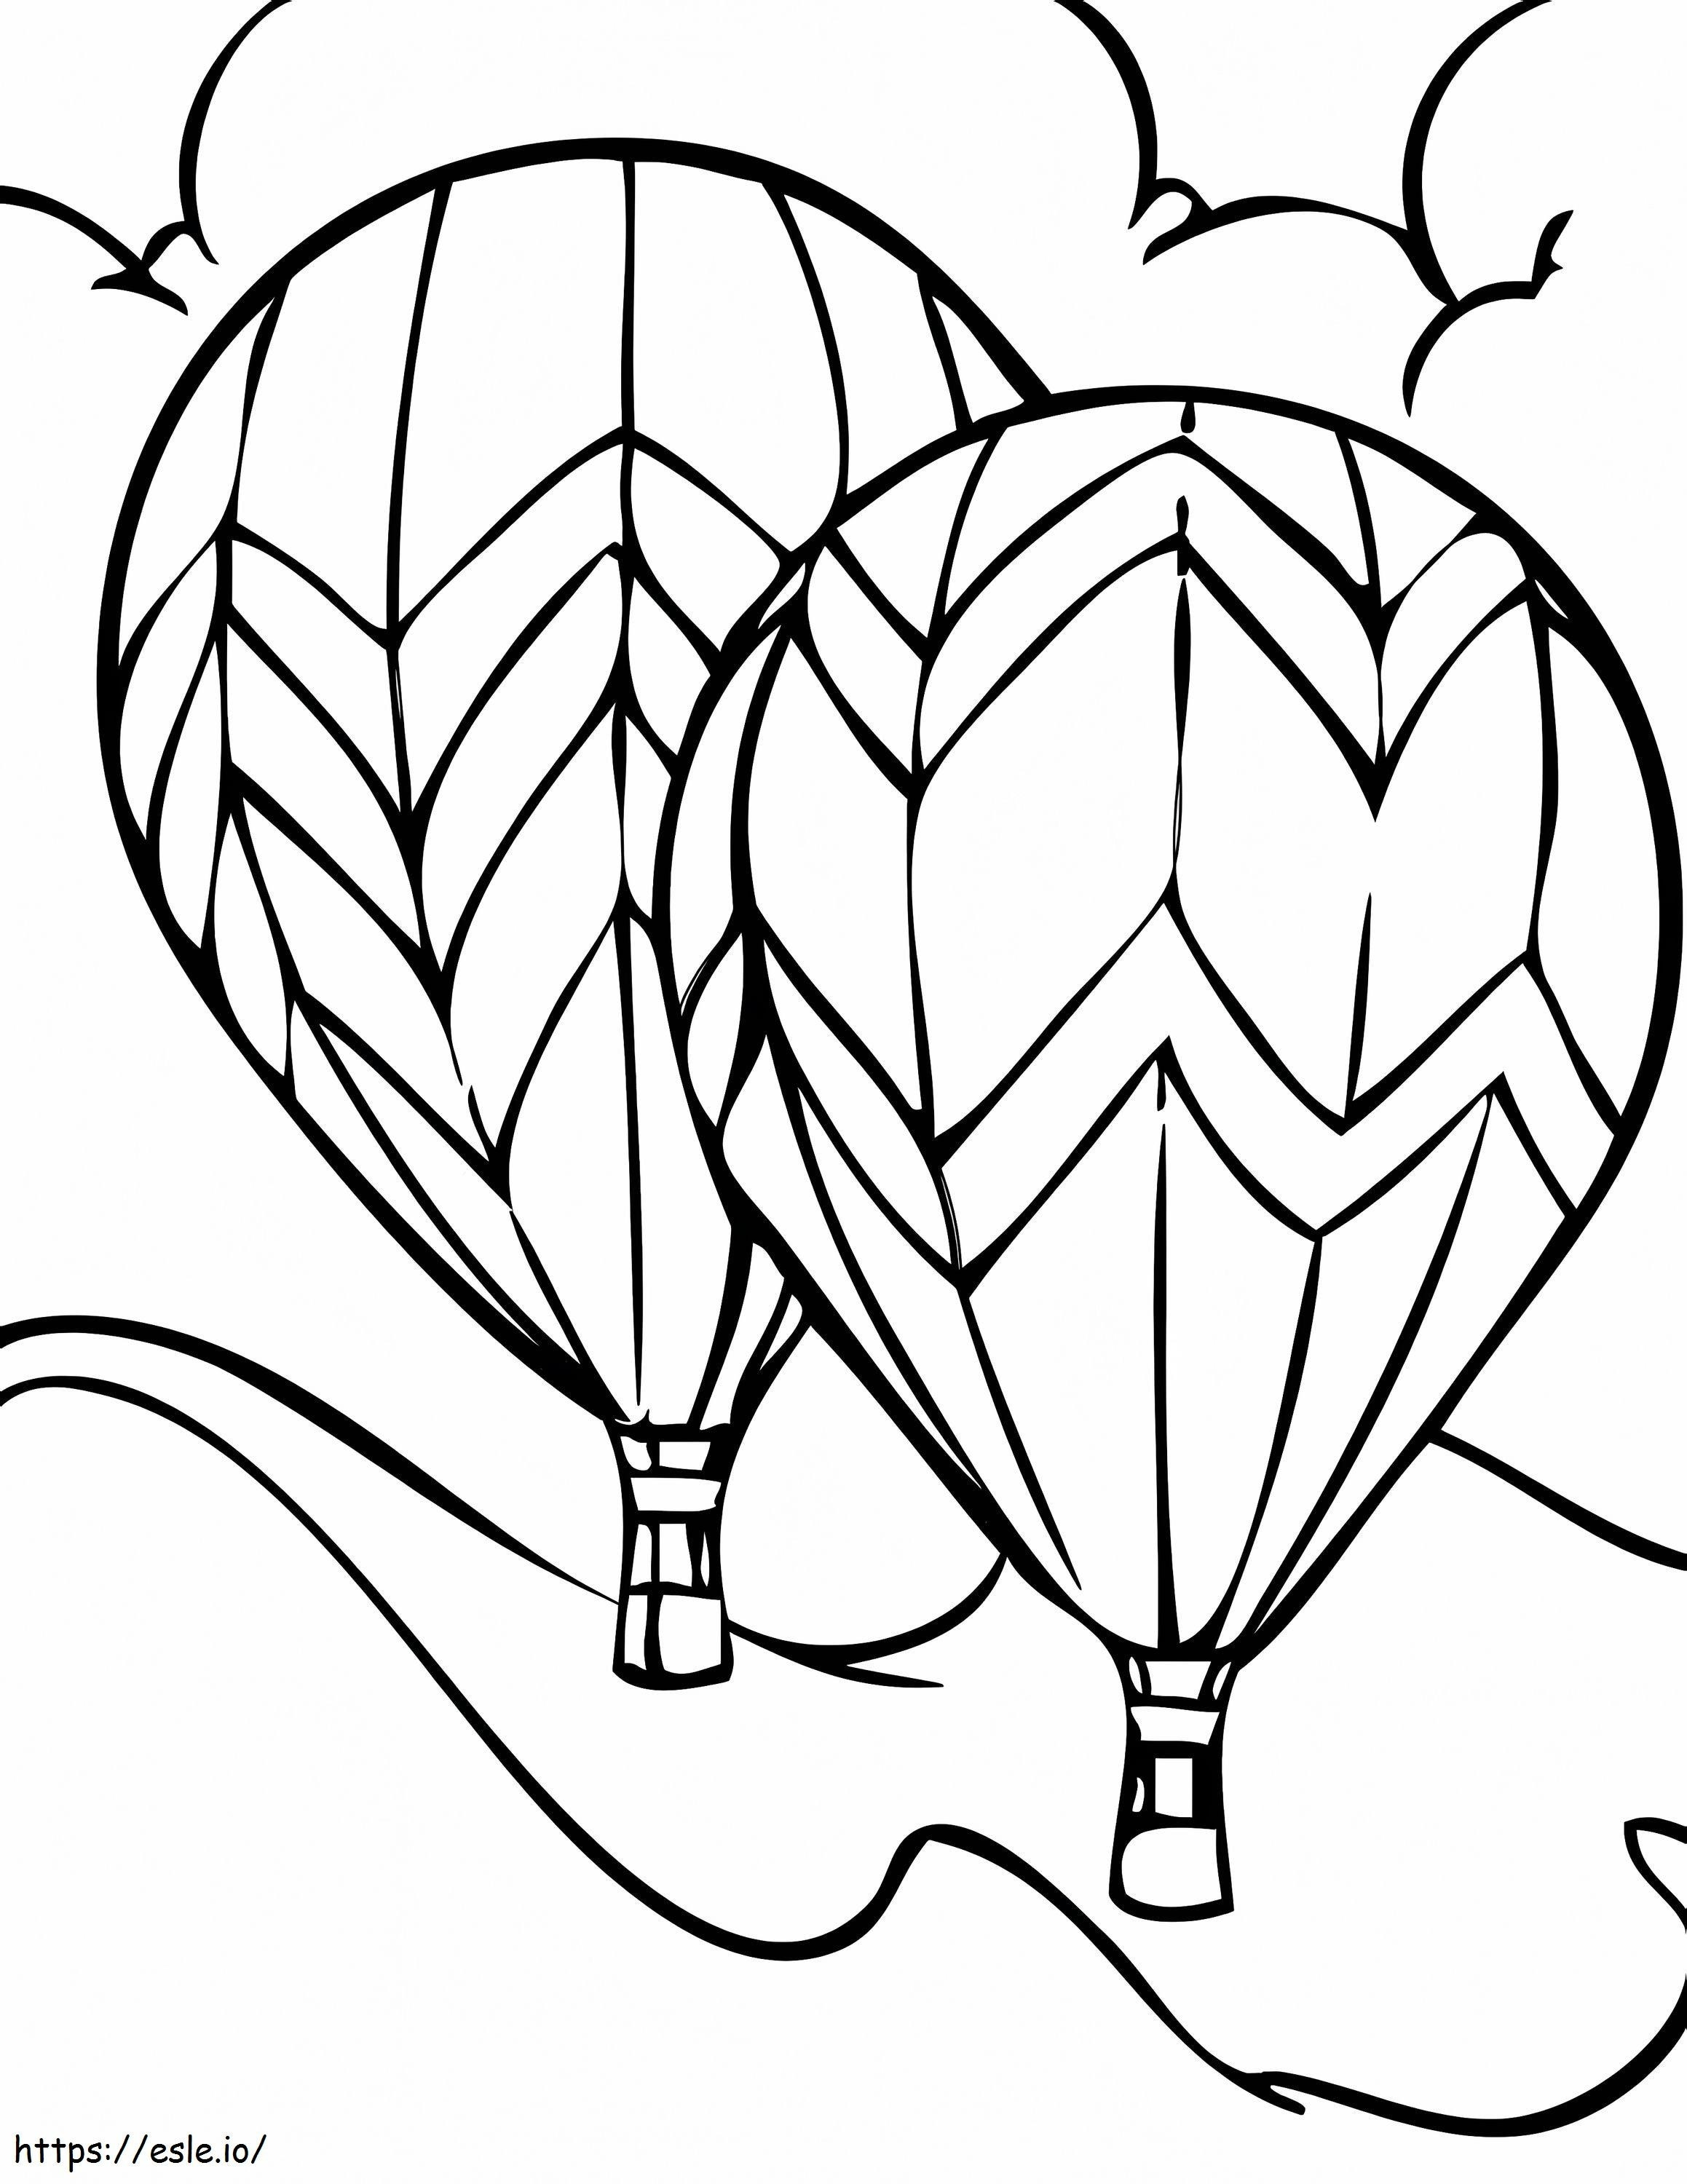 İki Sıcak Hava Balonu boyama